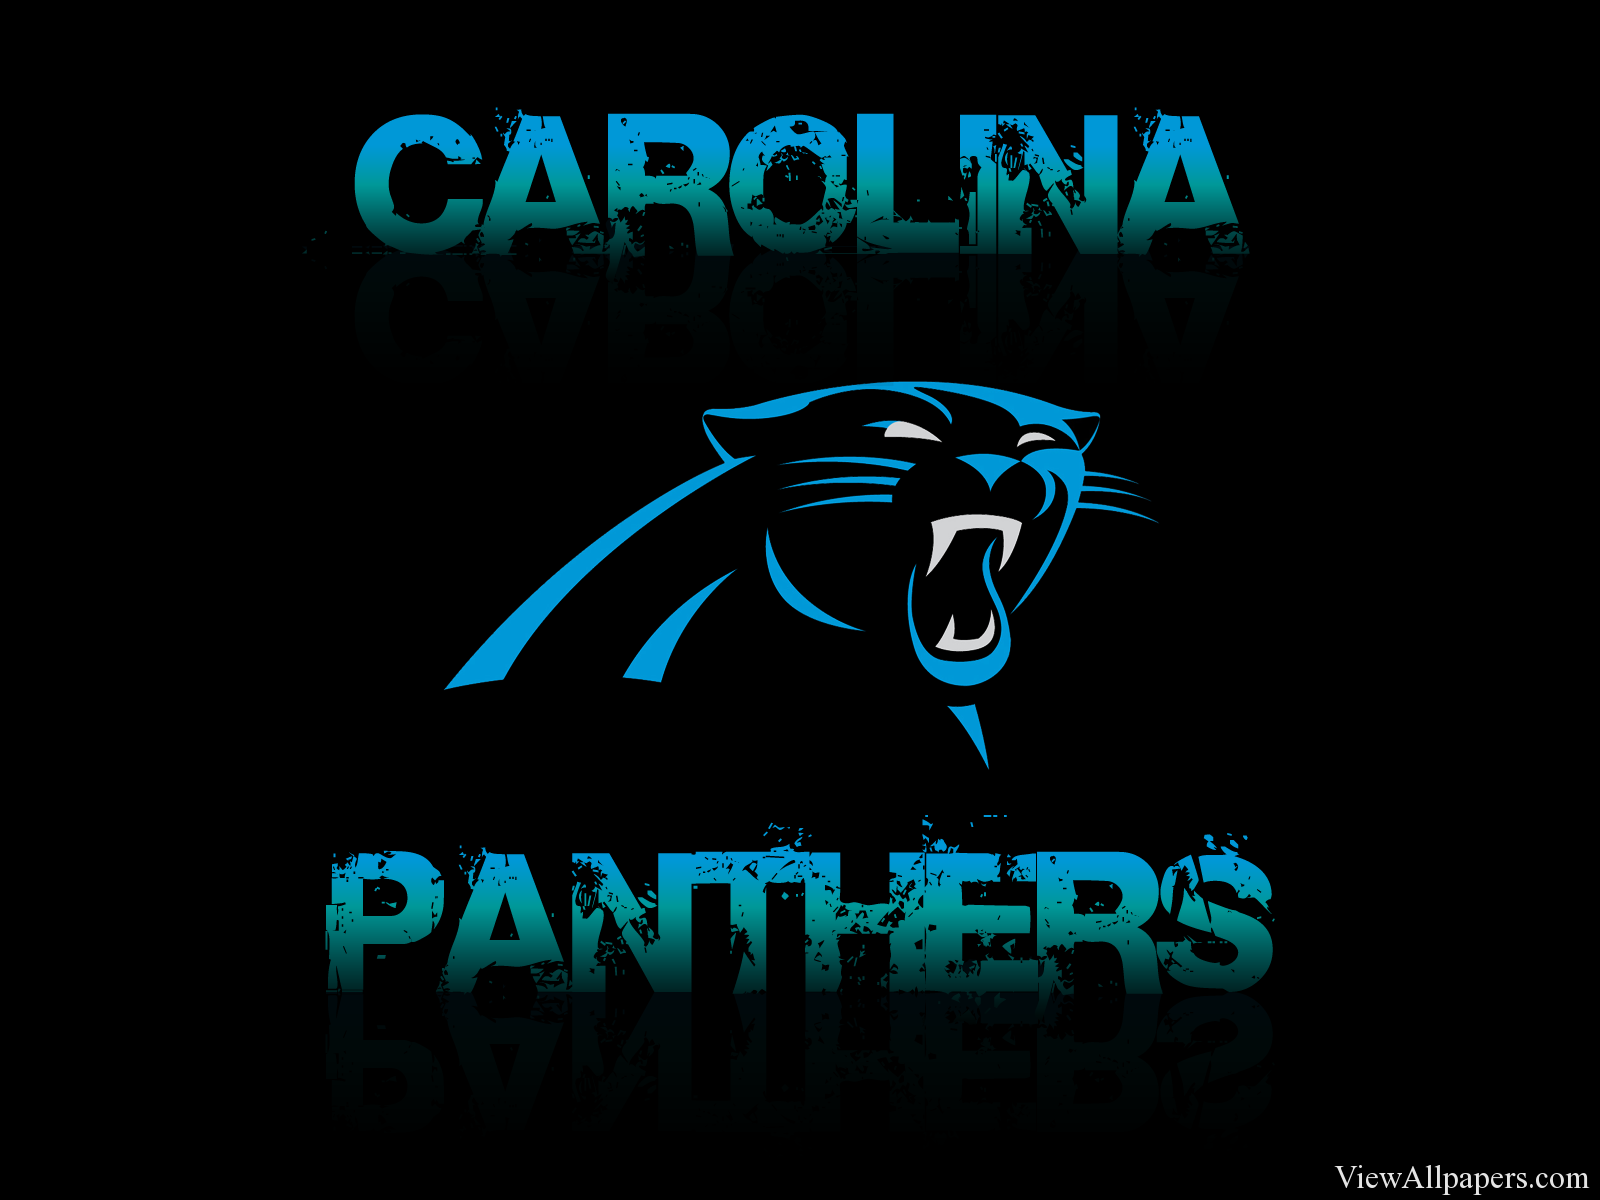 Carolina Panthers Logo HD Resolution Free download Carolina Panthers